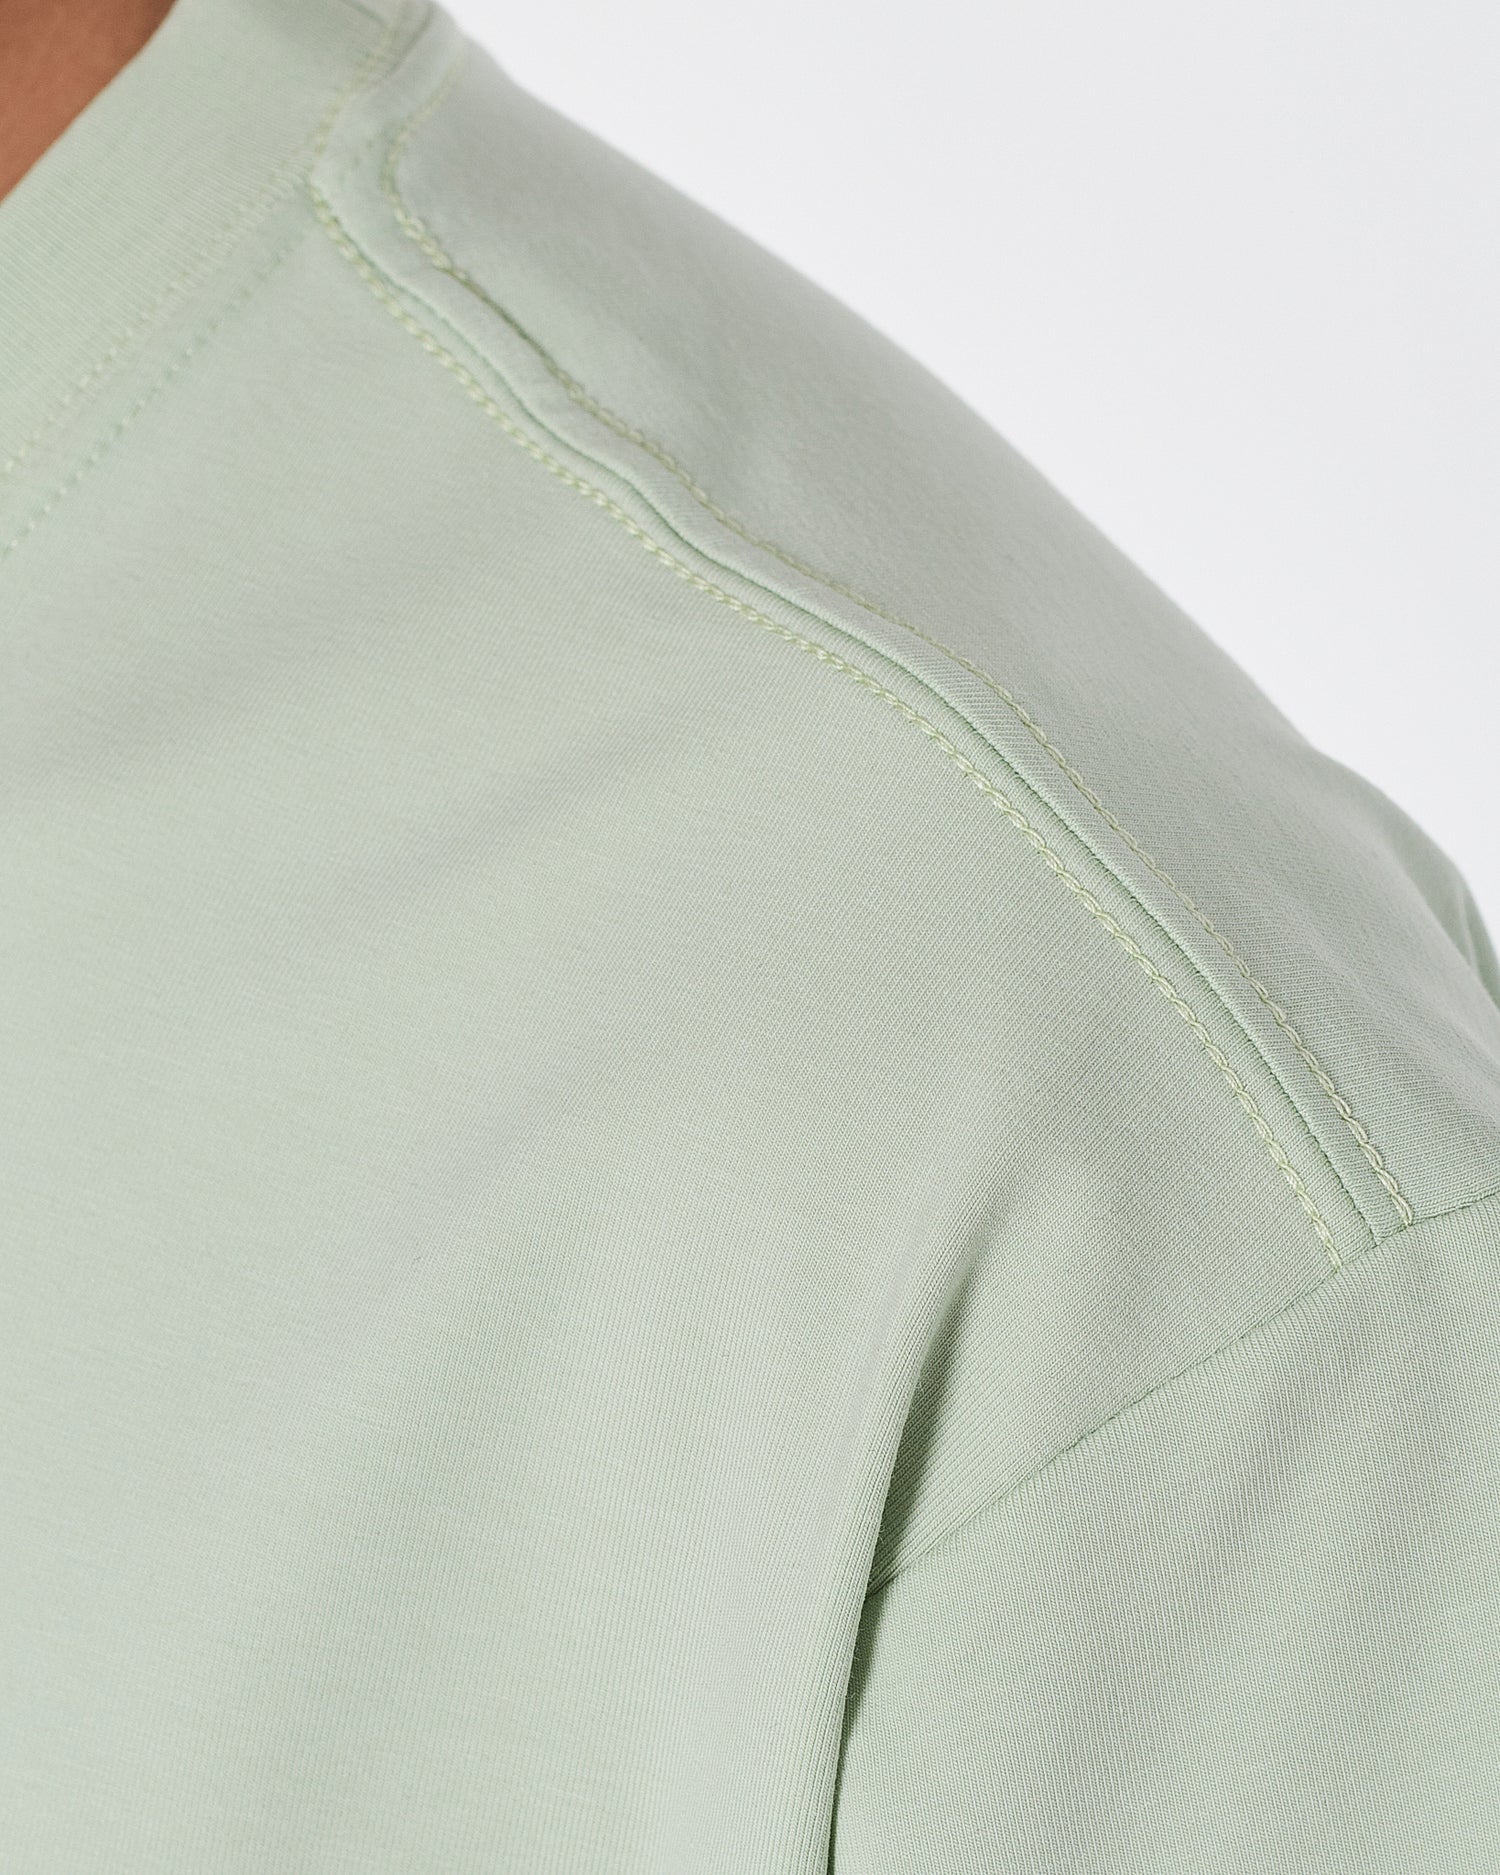 CK Gradient Color Men Green T-Shirt 14.90